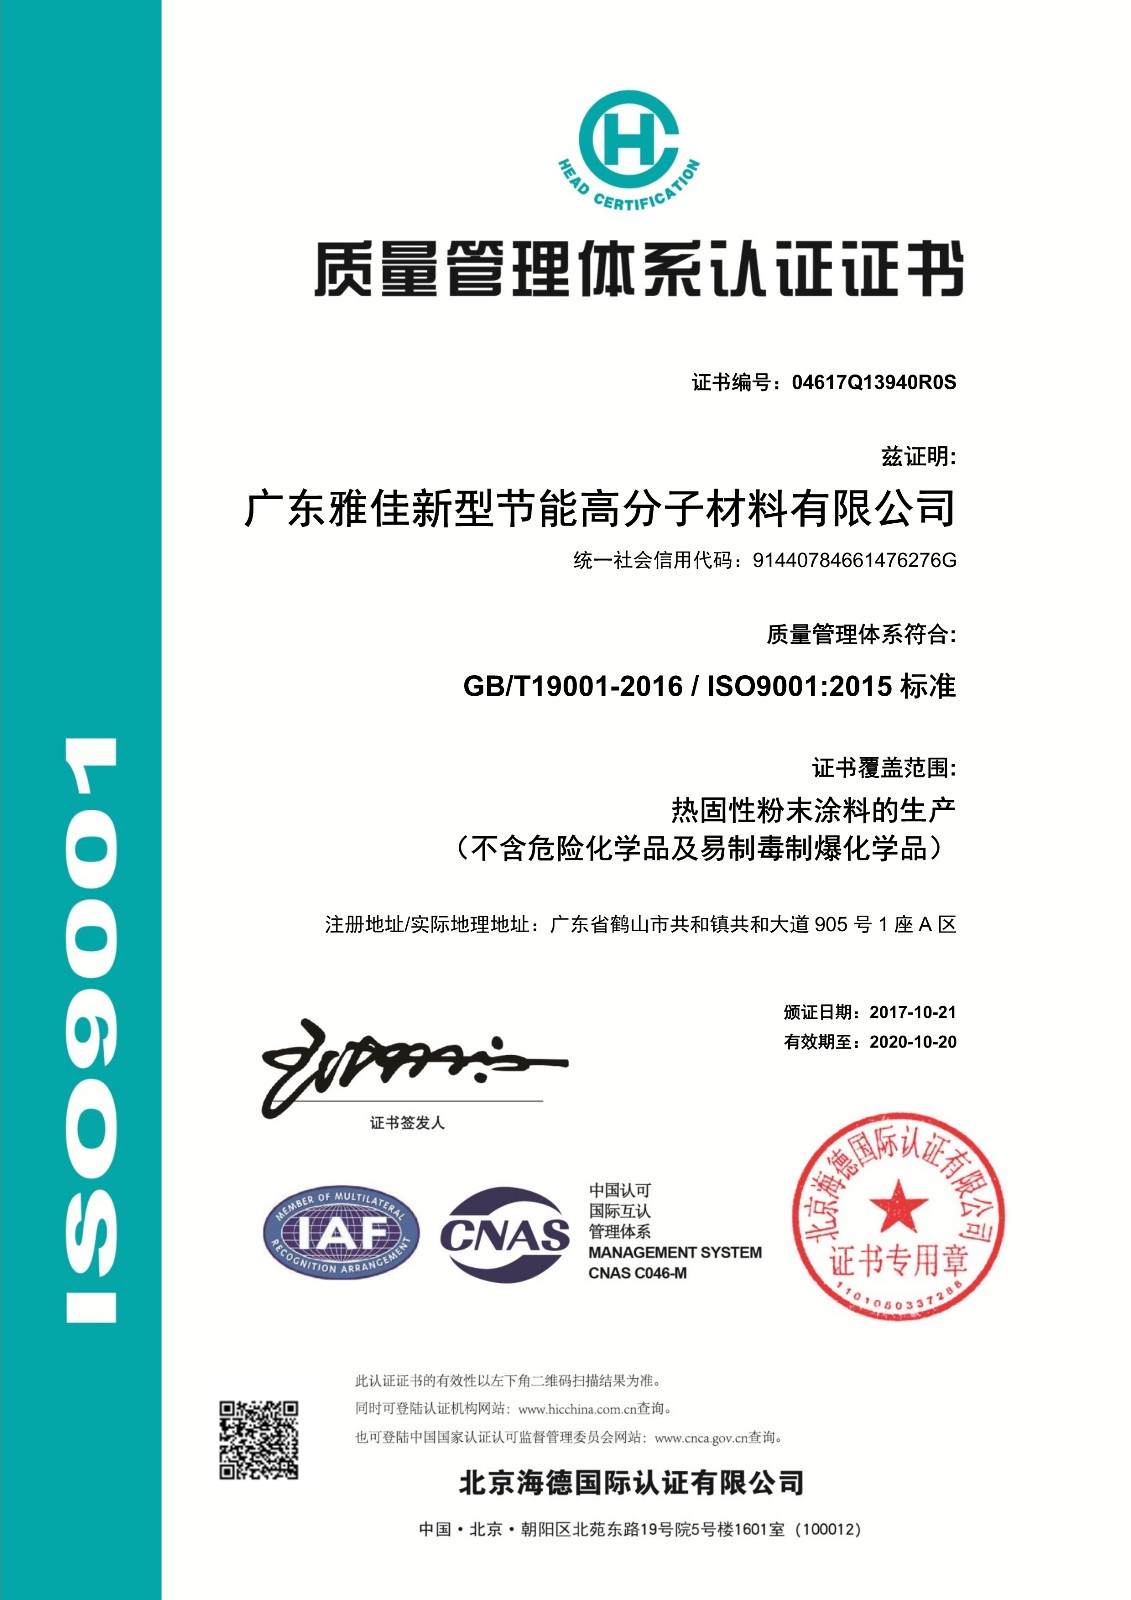 16 (中文）ISO90012015质量体系认证证书2017.10.21.jpg